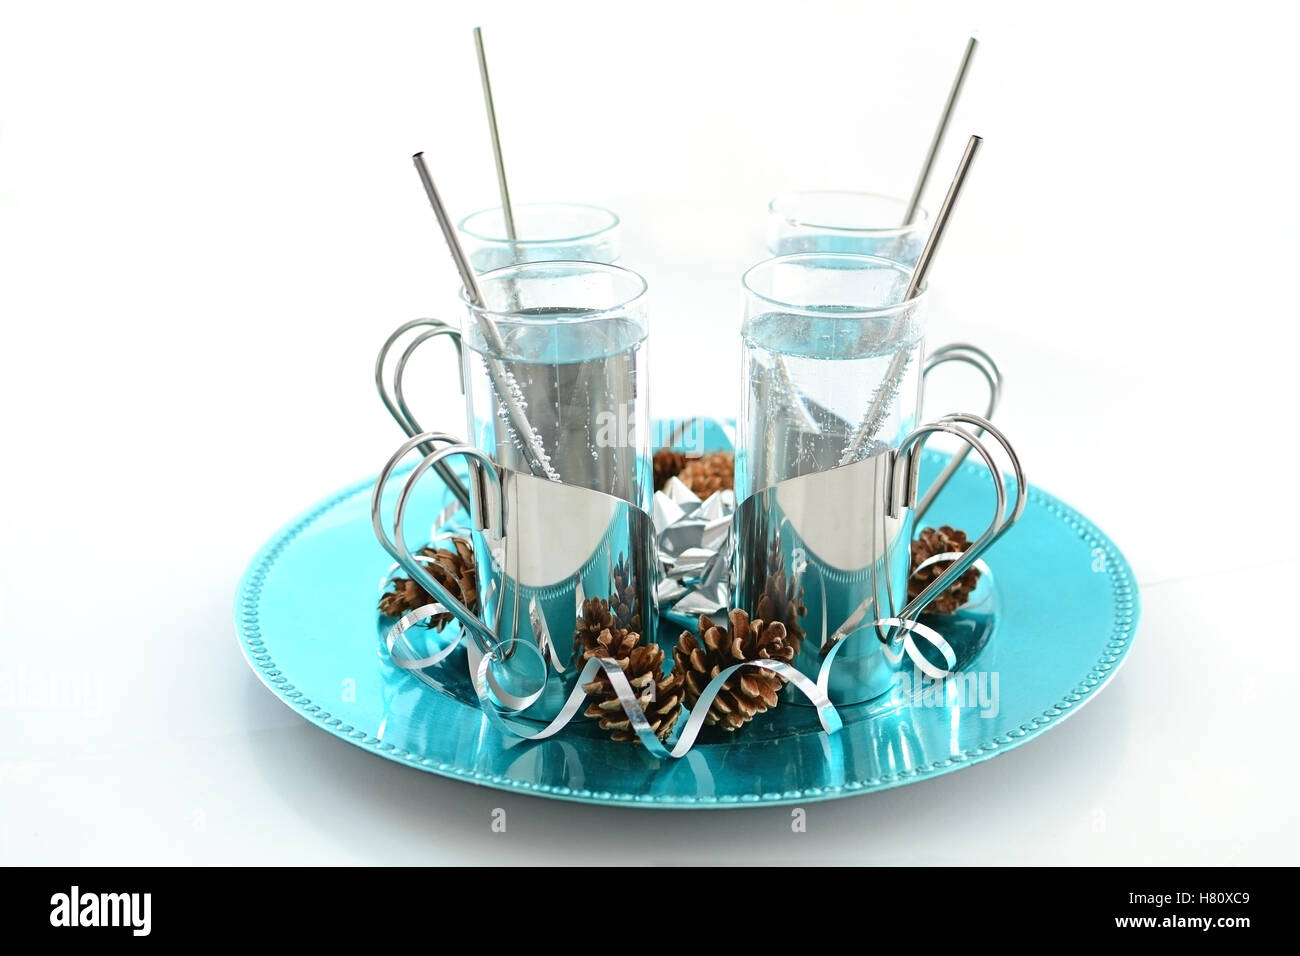 Vini spumanti non caffeinated, soft drink in argento titolari sul vassoio turchese con festosa pigne e nastro argentato riccioli Foto Stock